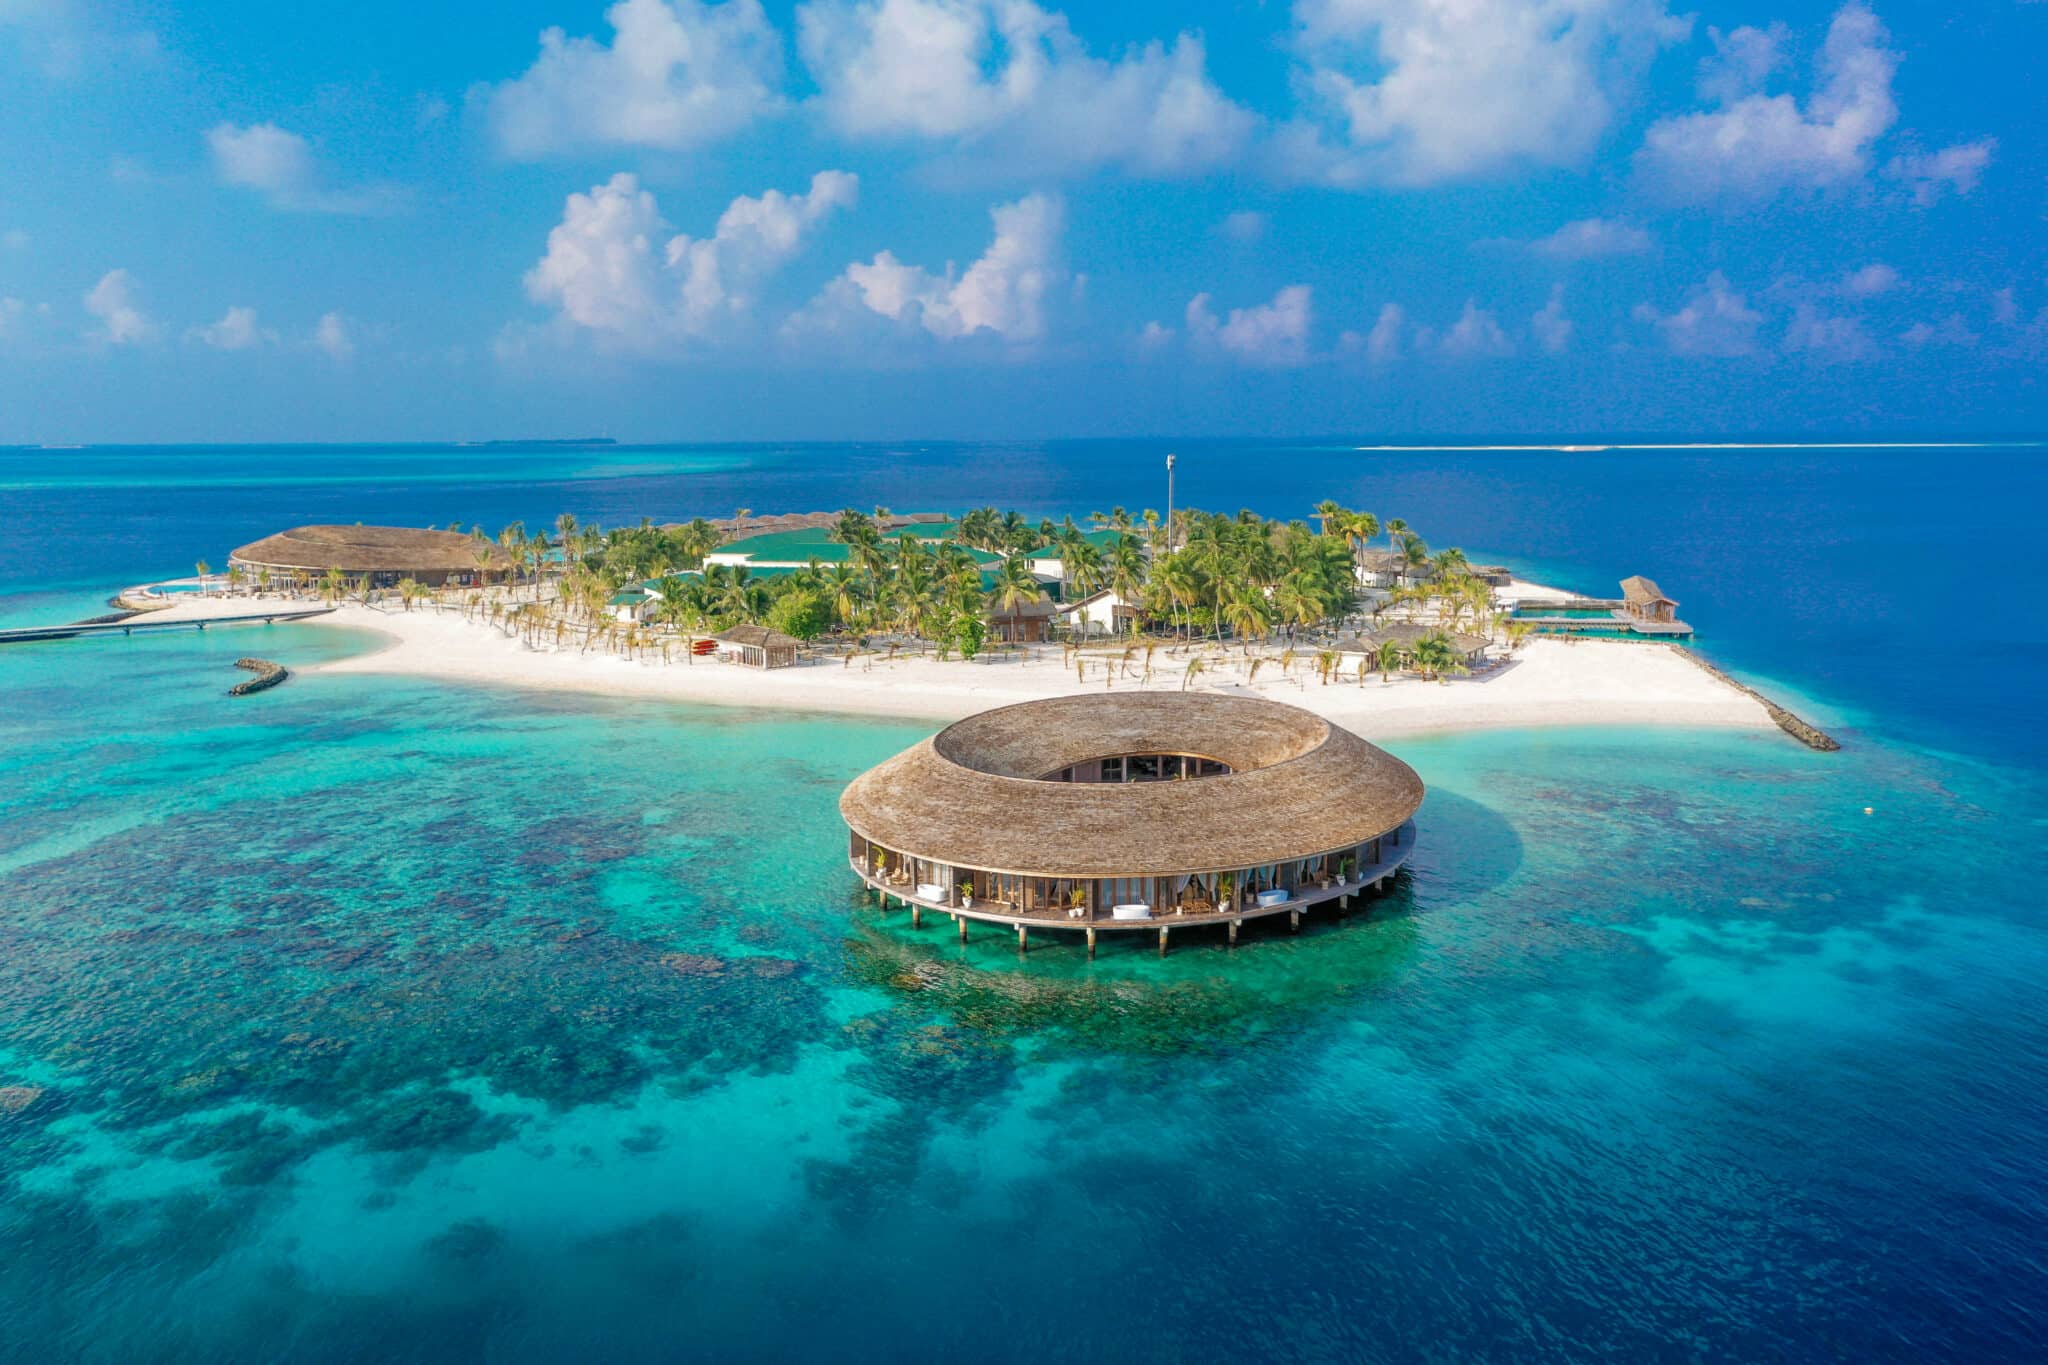 Kagi Maldives Spa Island является частью известной мальдивской концепции «Один остров — один курорт».